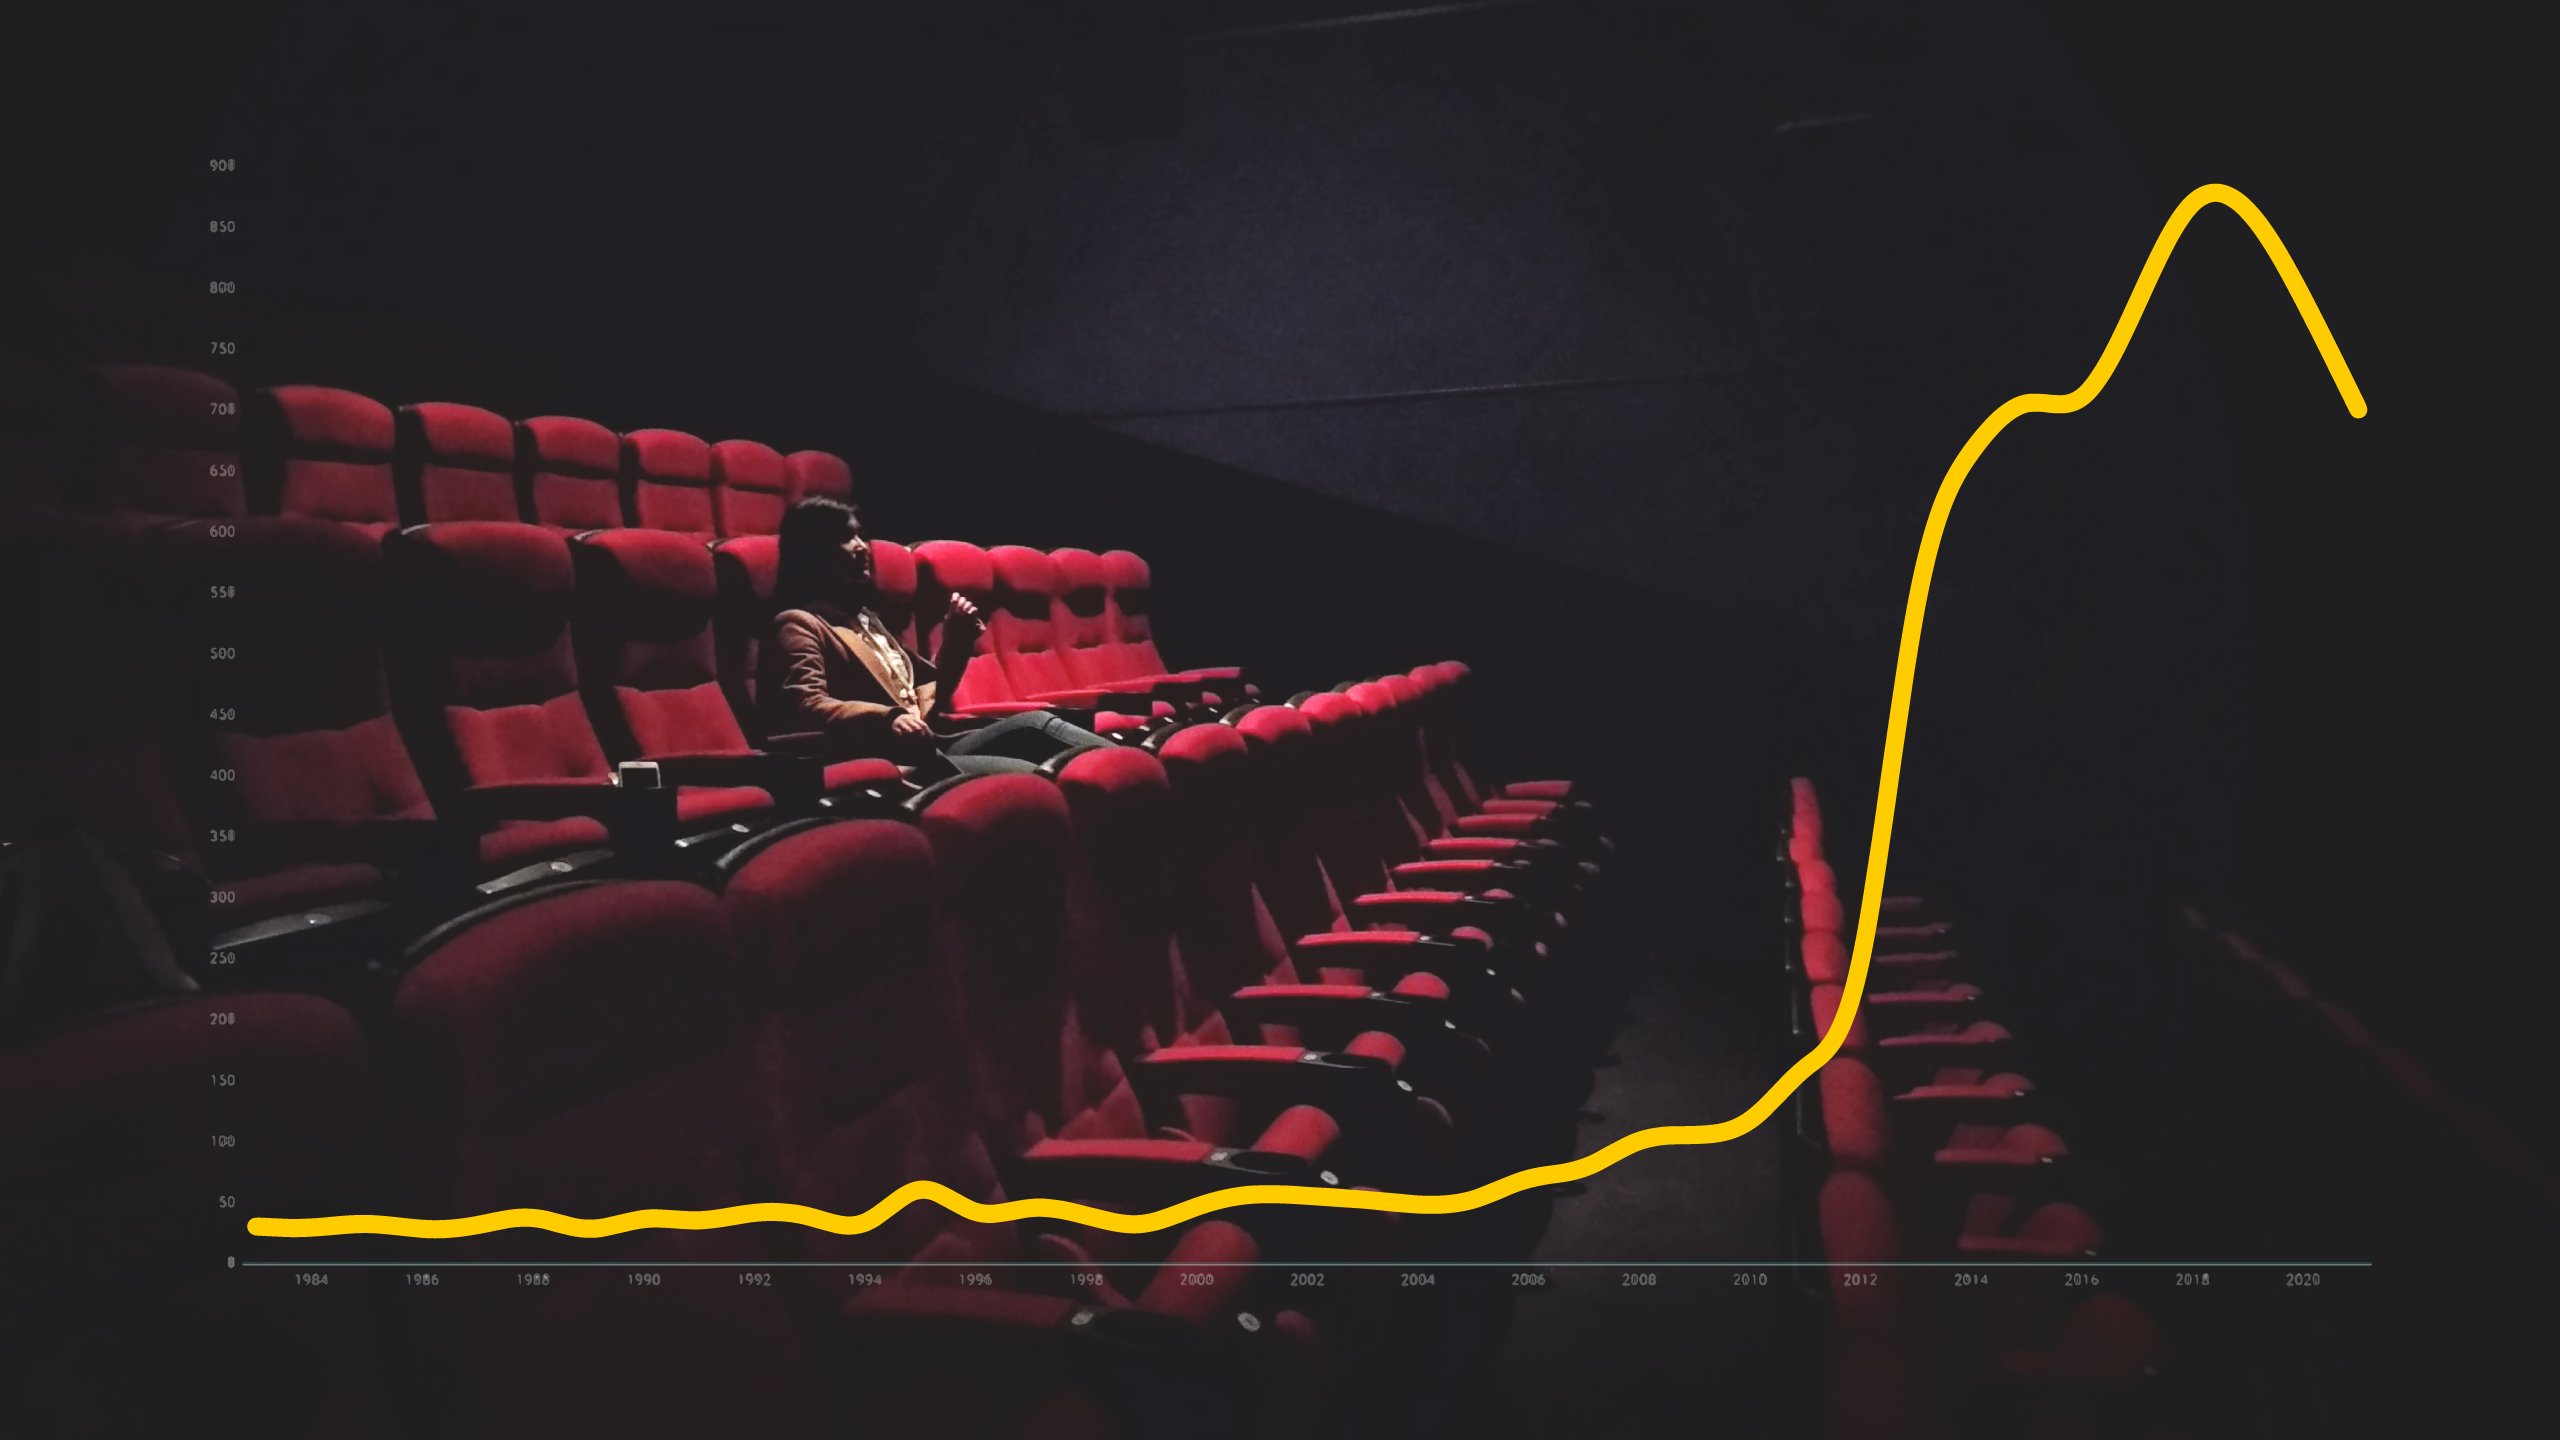 El catalán en el cine cae un 20% en 4 años